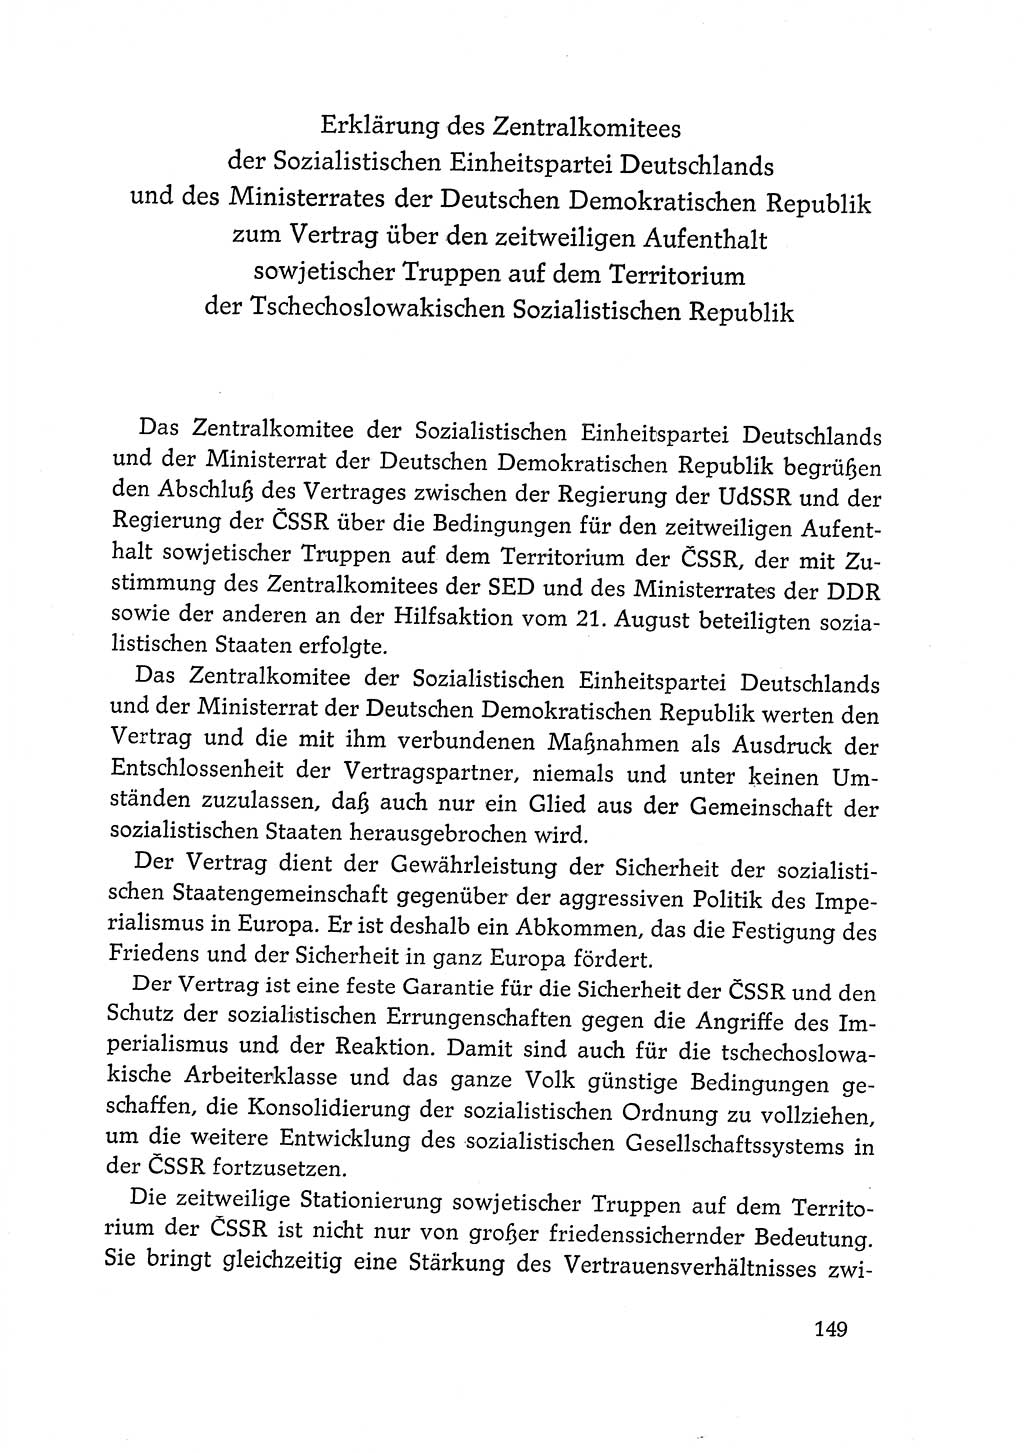 Dokumente der Sozialistischen Einheitspartei Deutschlands (SED) [Deutsche Demokratische Republik (DDR)] 1968-1969, Seite 149 (Dok. SED DDR 1968-1969, S. 149)